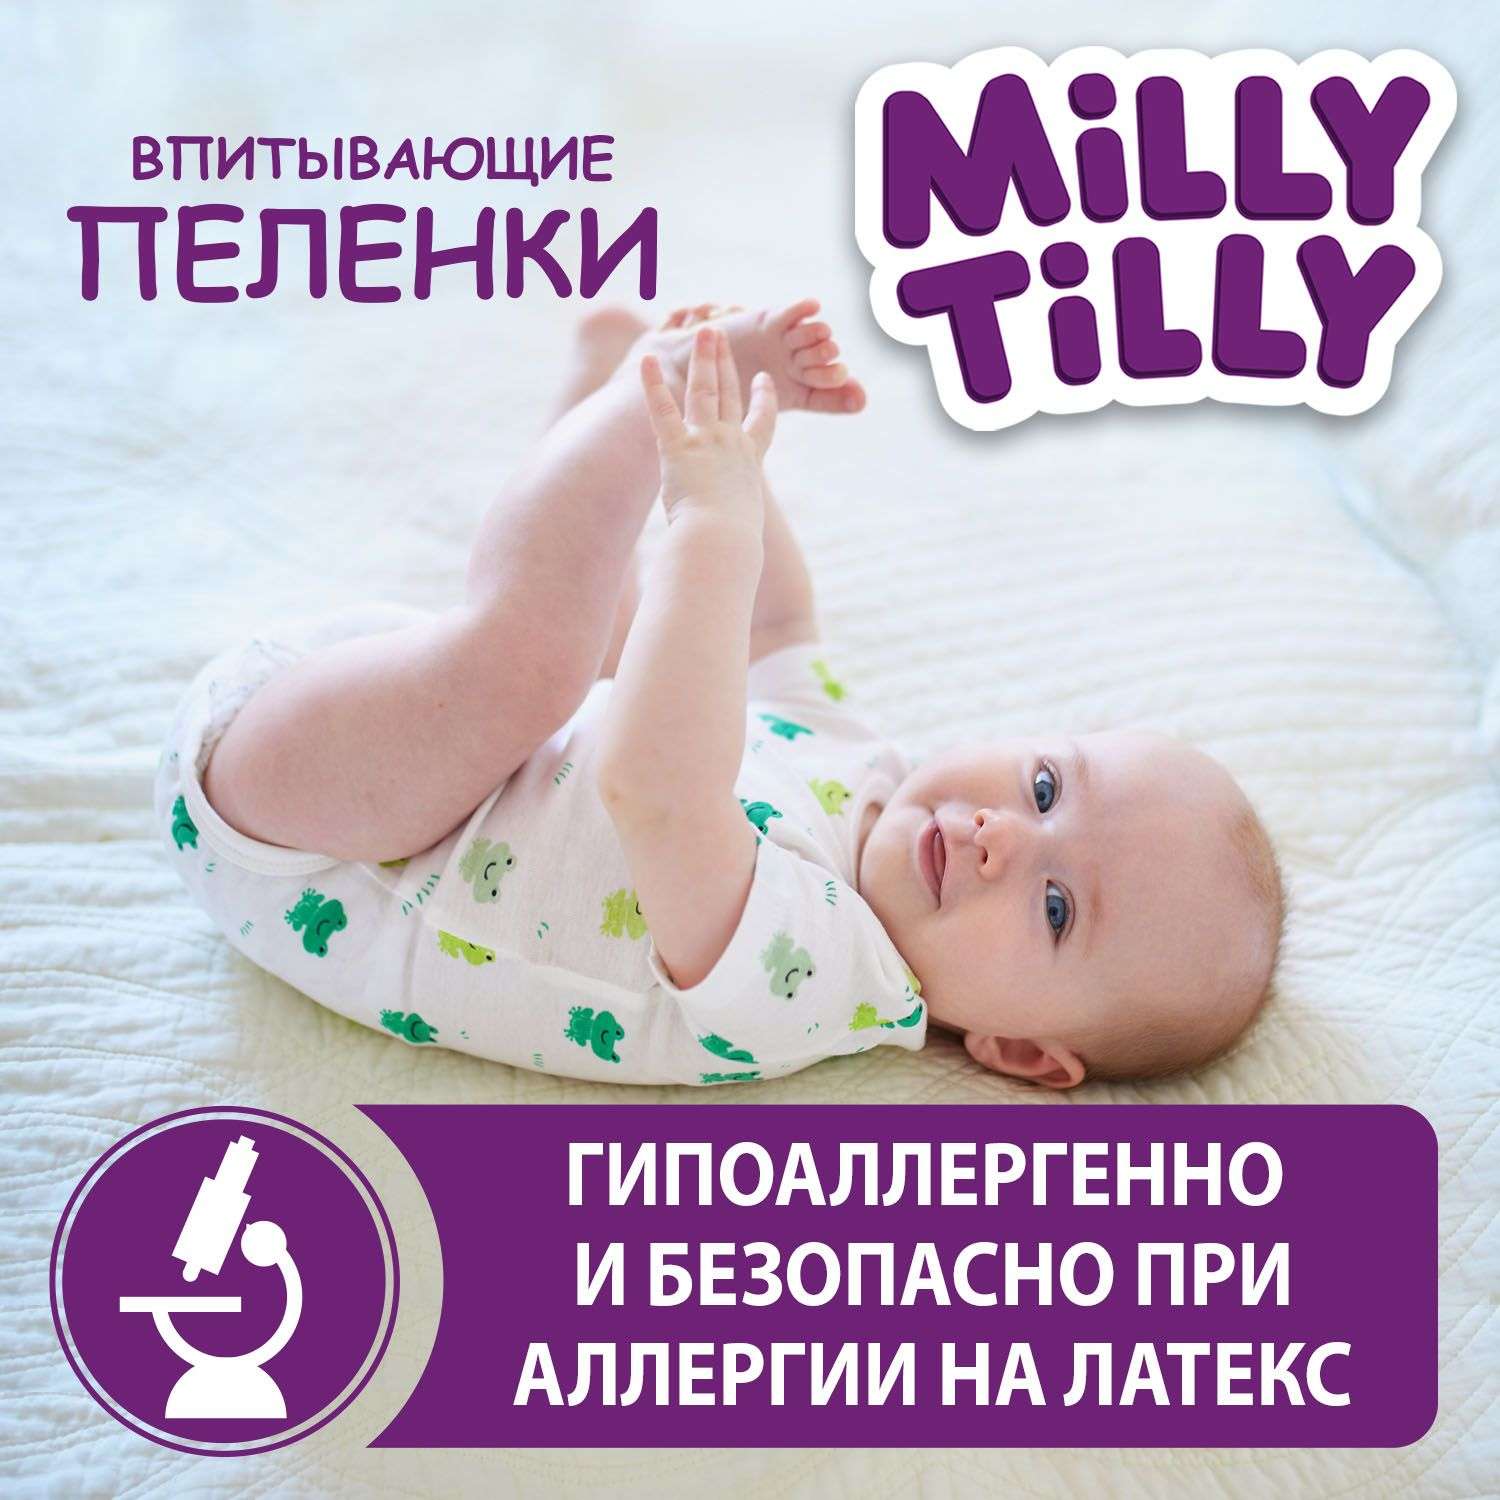 Пеленки детские Milly Tilly одноразовые Normal 60x60 30 штук - фото 2